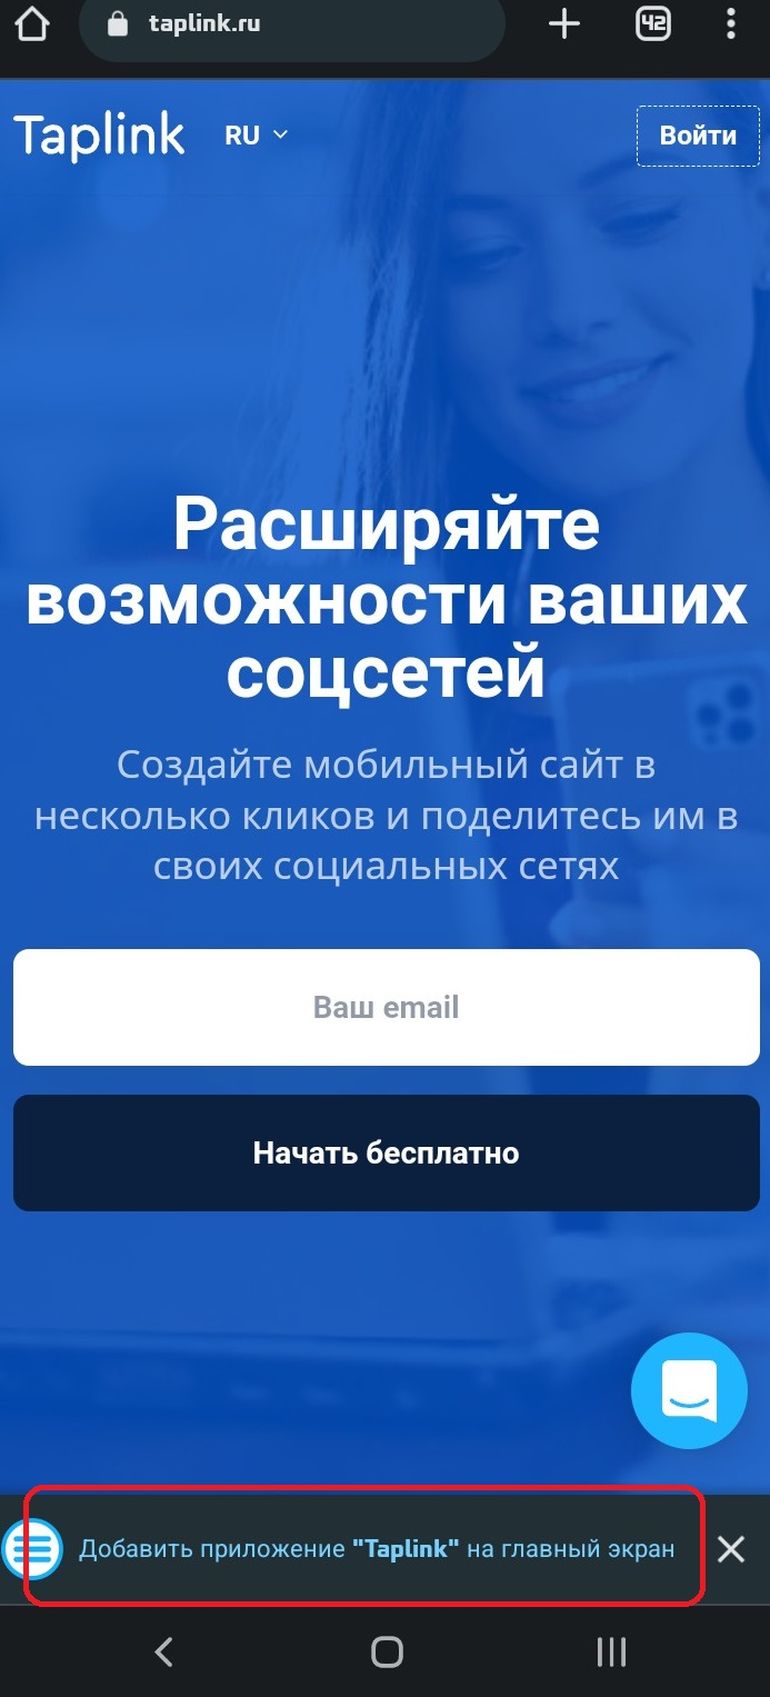 taplink.ru приложение